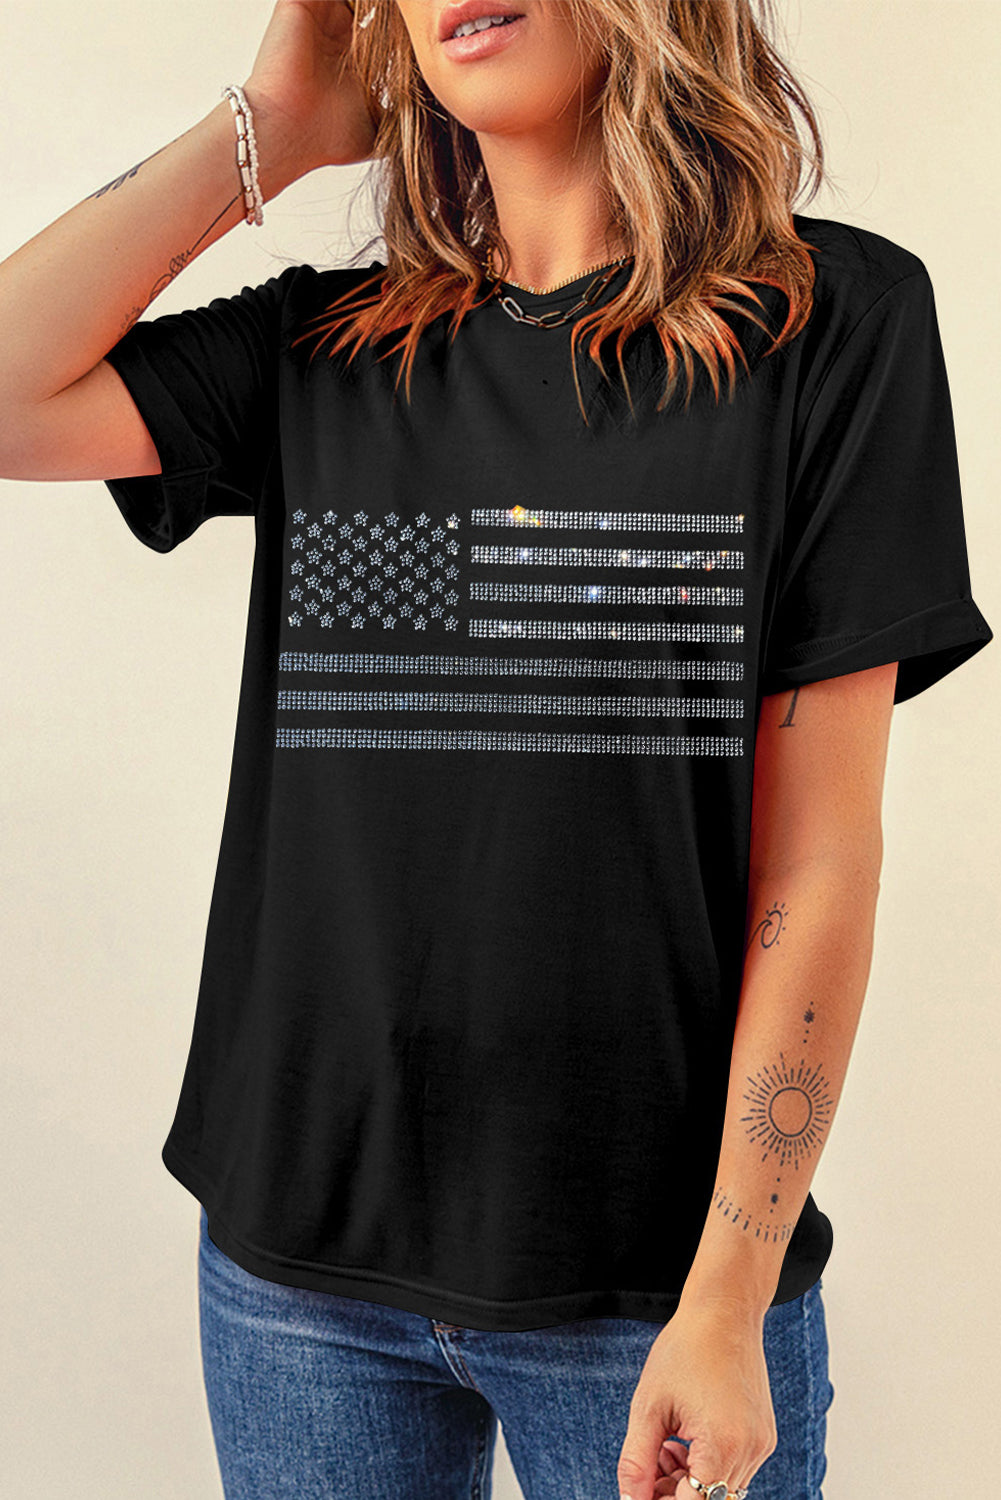 Rhinestone USA Flag Round Neck Short Sleeve T-Shirt Sunset and Swim   